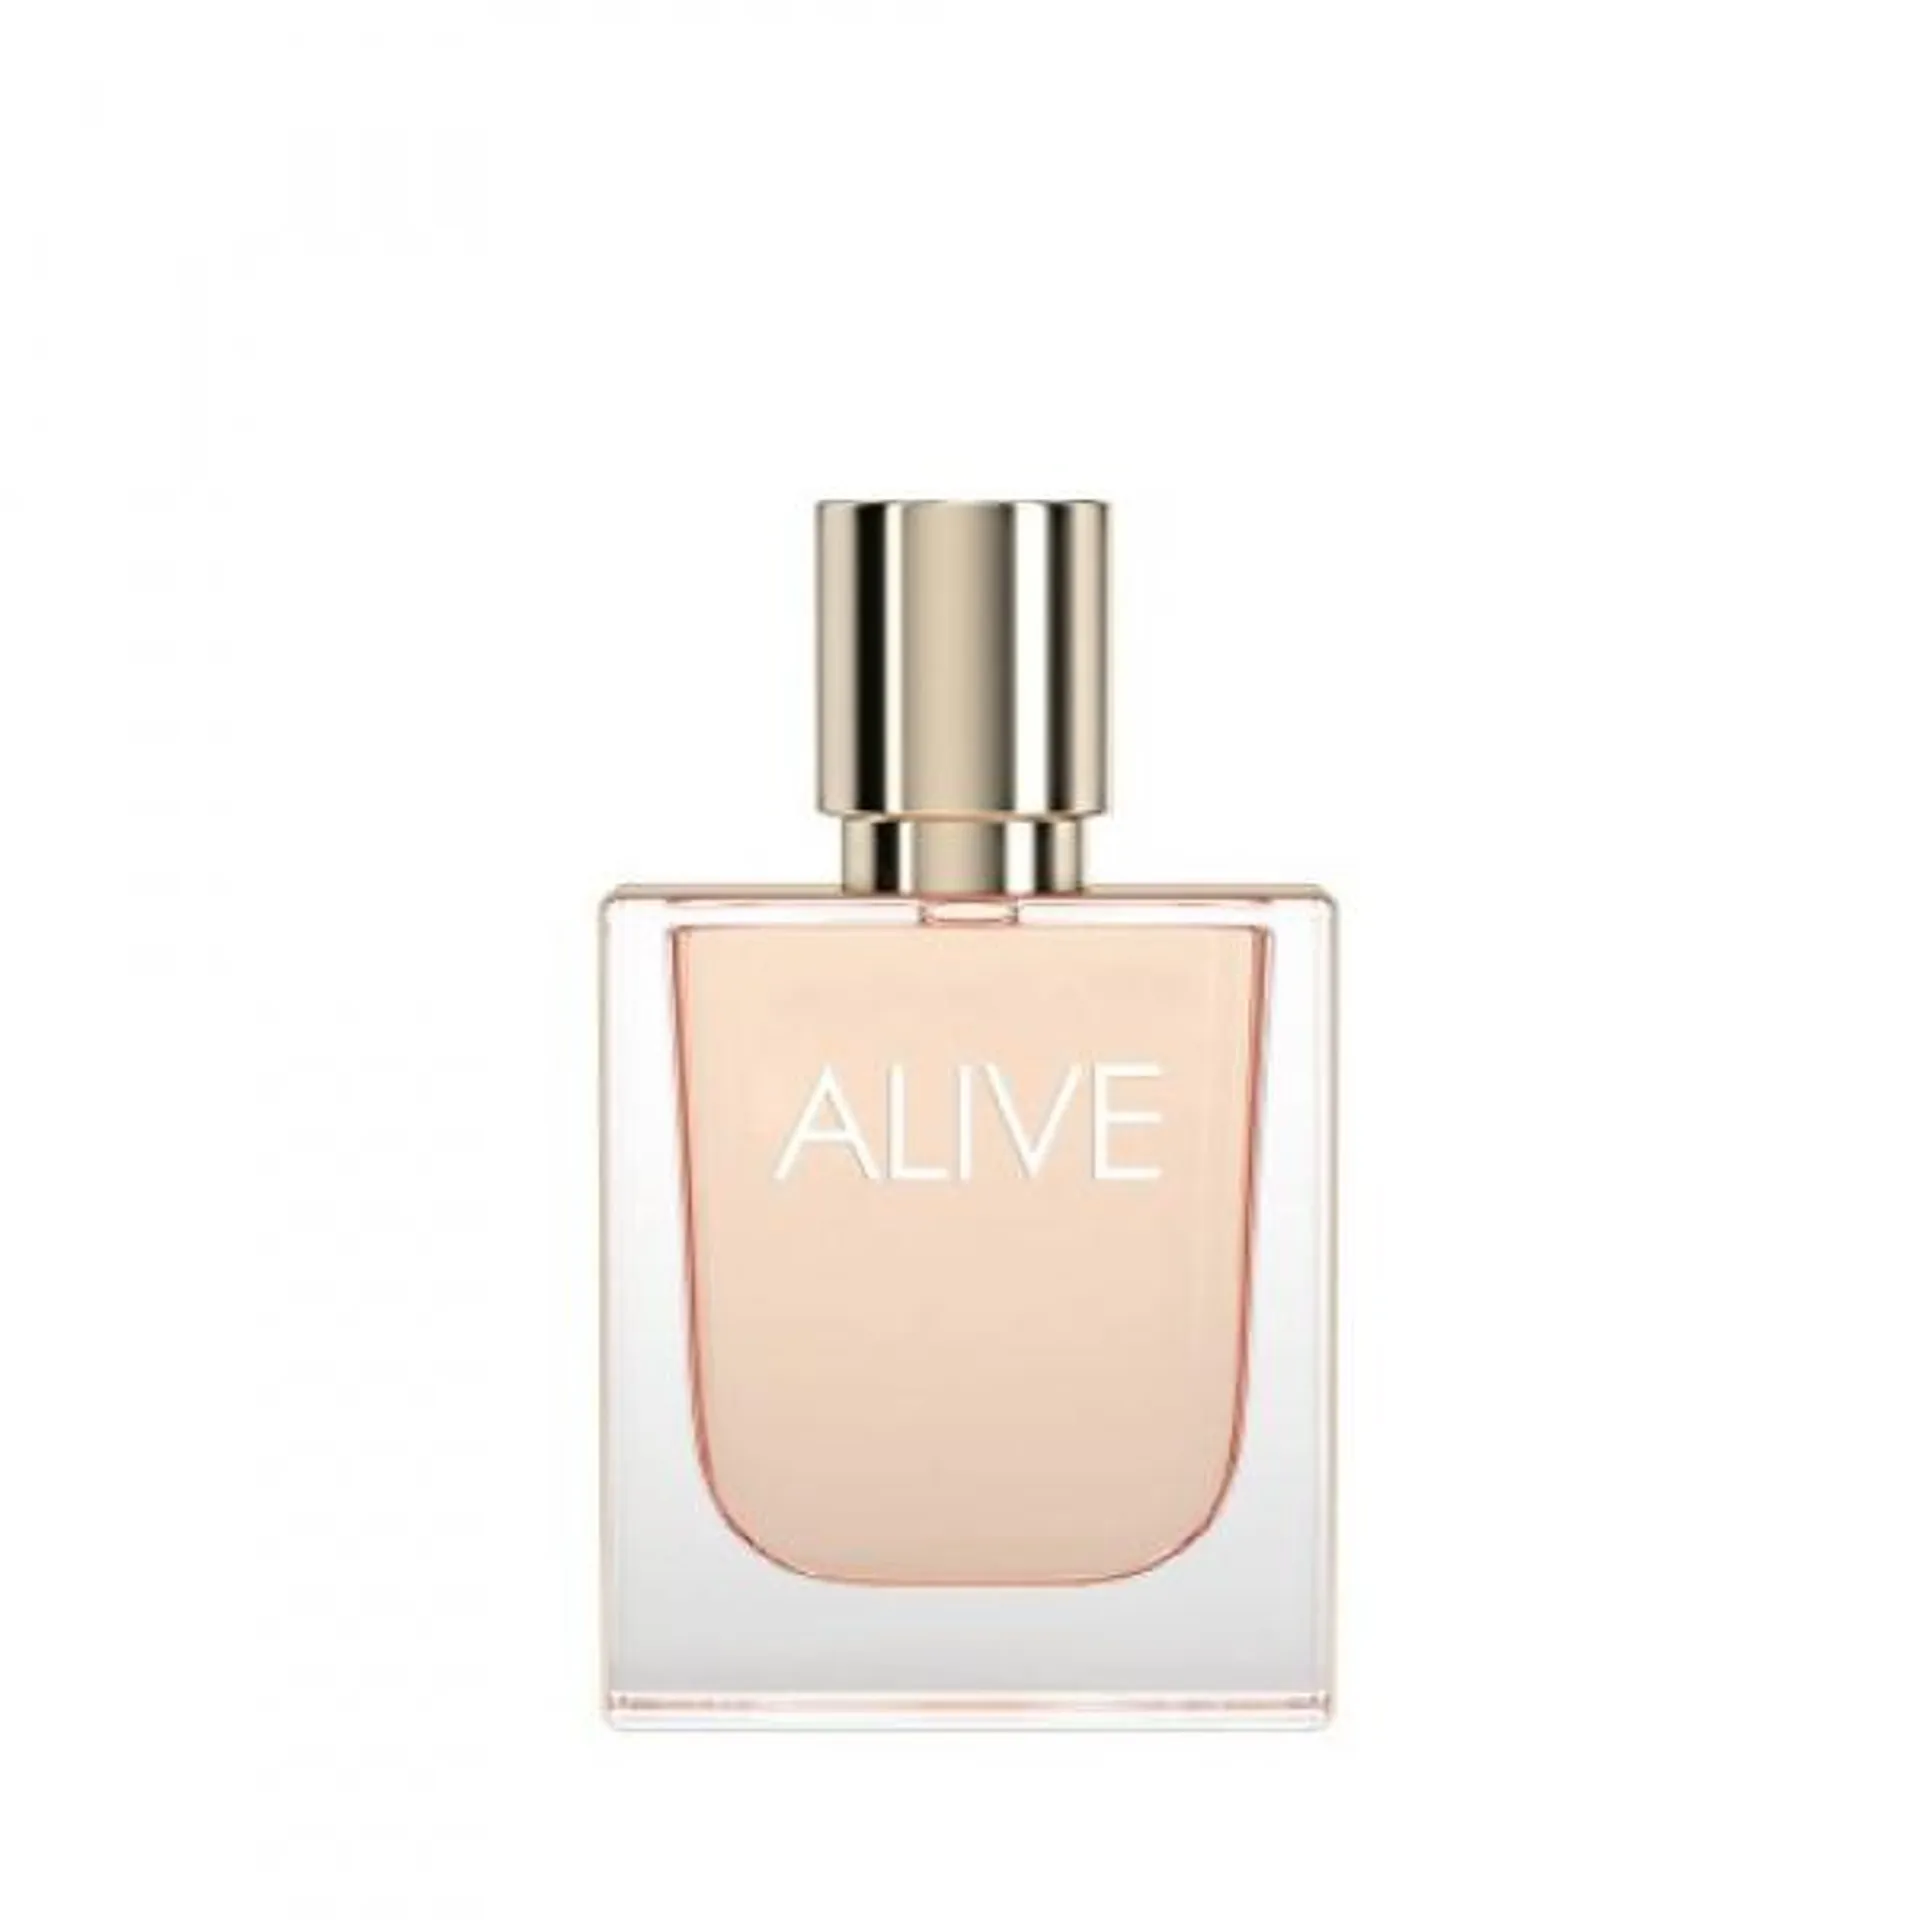 Alive - parfémová voda 30 ml